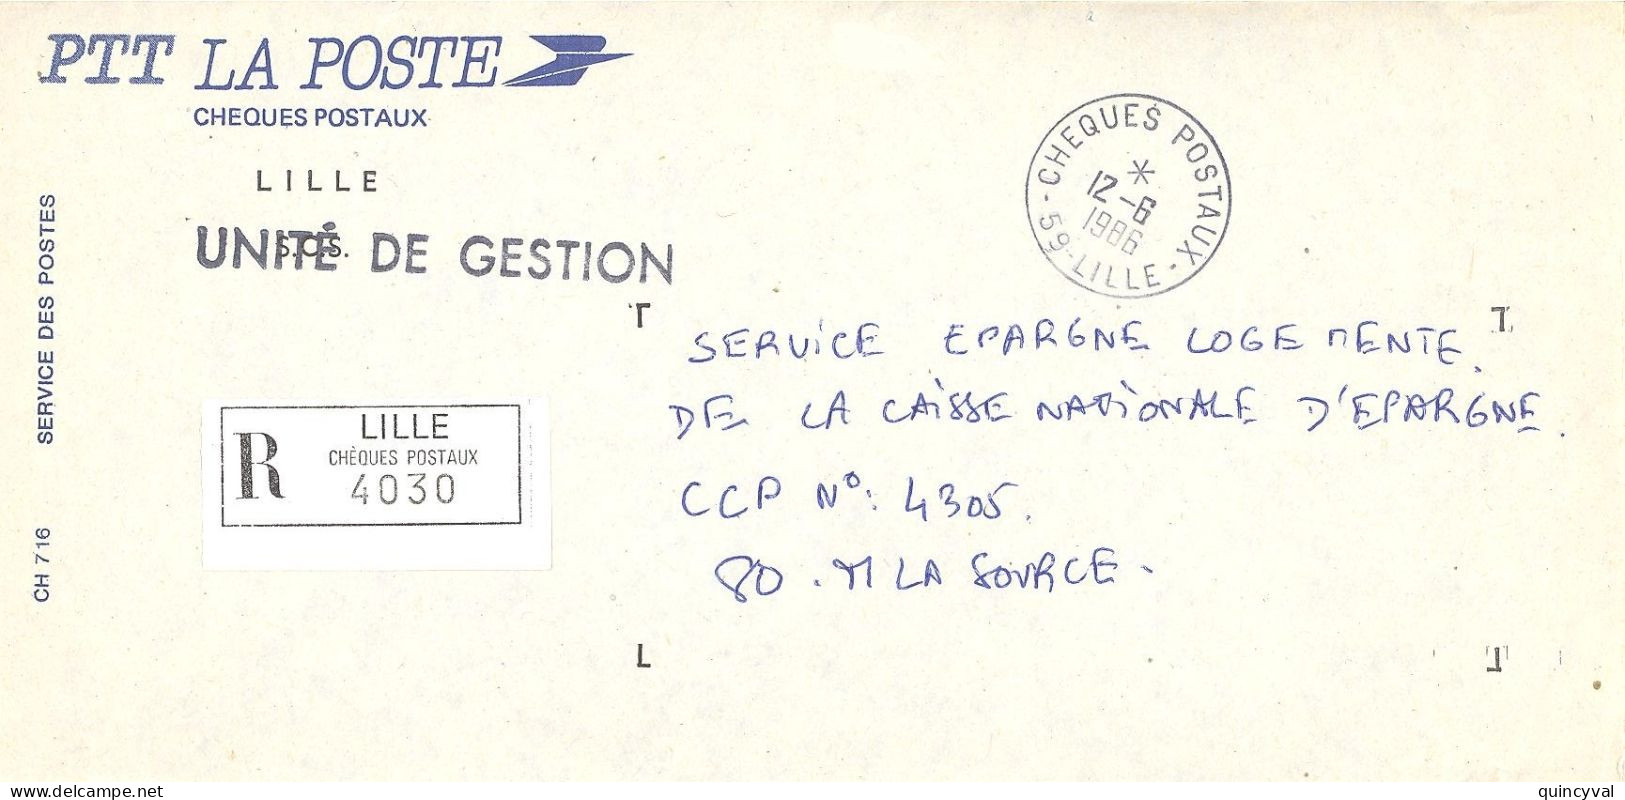 CHEQUES POSTAUX  59 LILLE Ob 12 6 1986 Lettre Enveloppe CCP Chèques Postaux RECOMMANDE UNITE De GESTION - Bolli Manuali